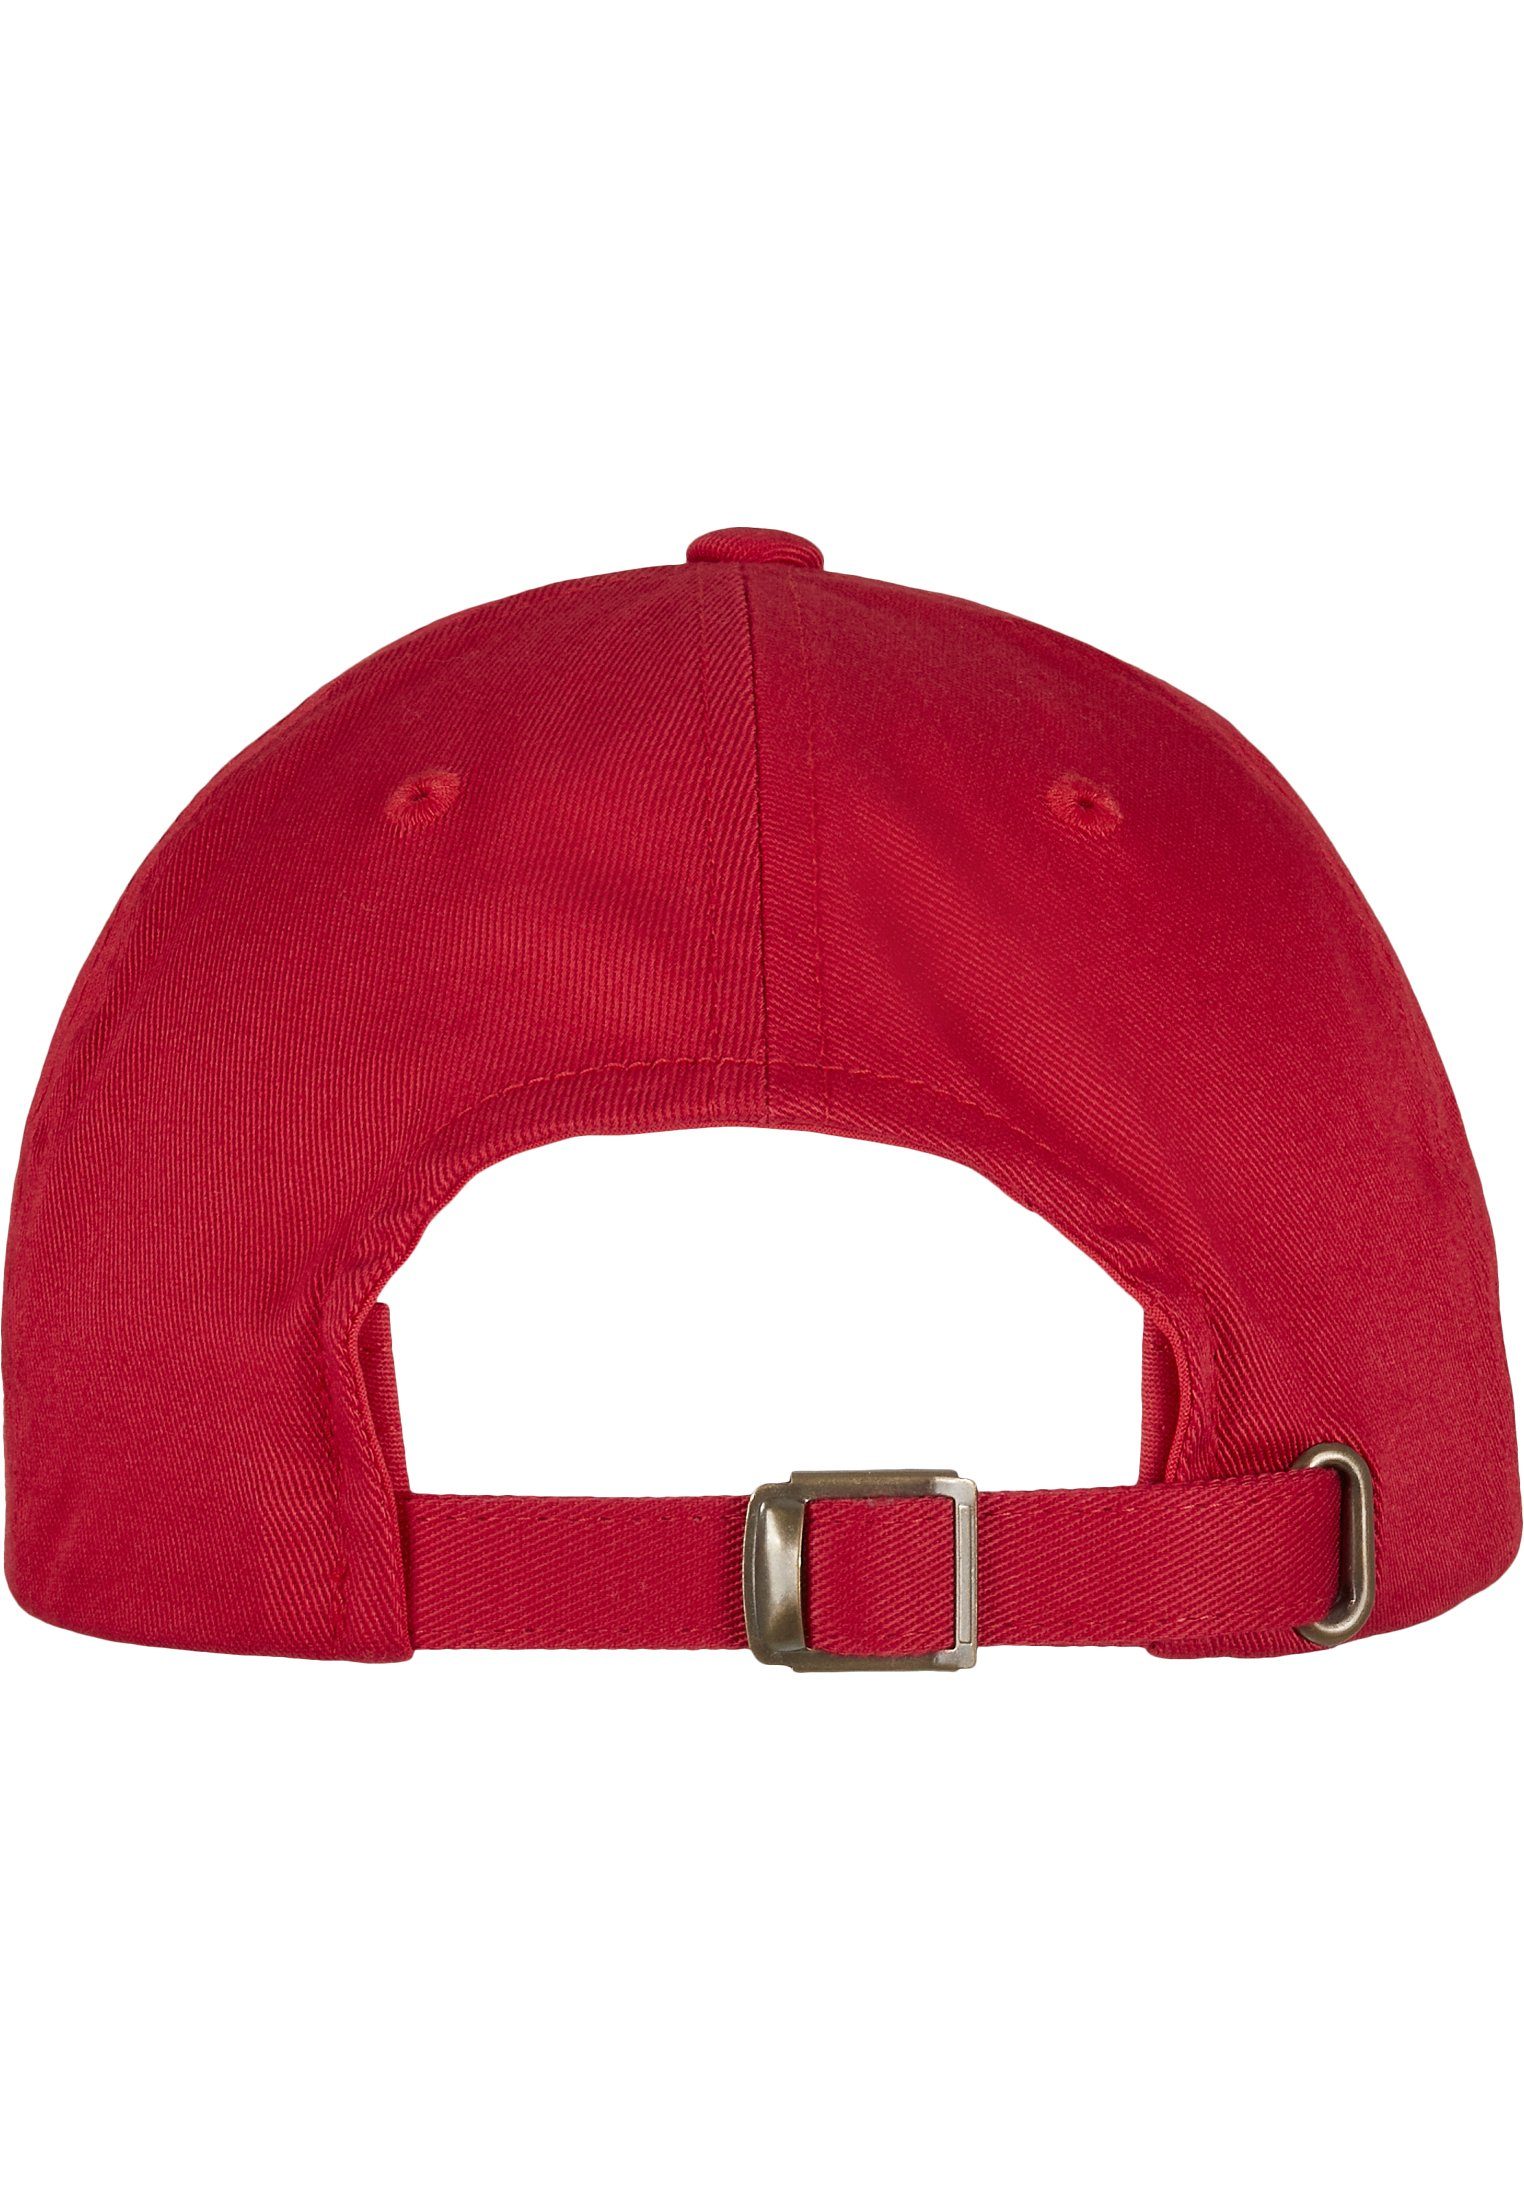 Cap Cap Profile Organic Low red Cotton Accessoires Flex Flexfit